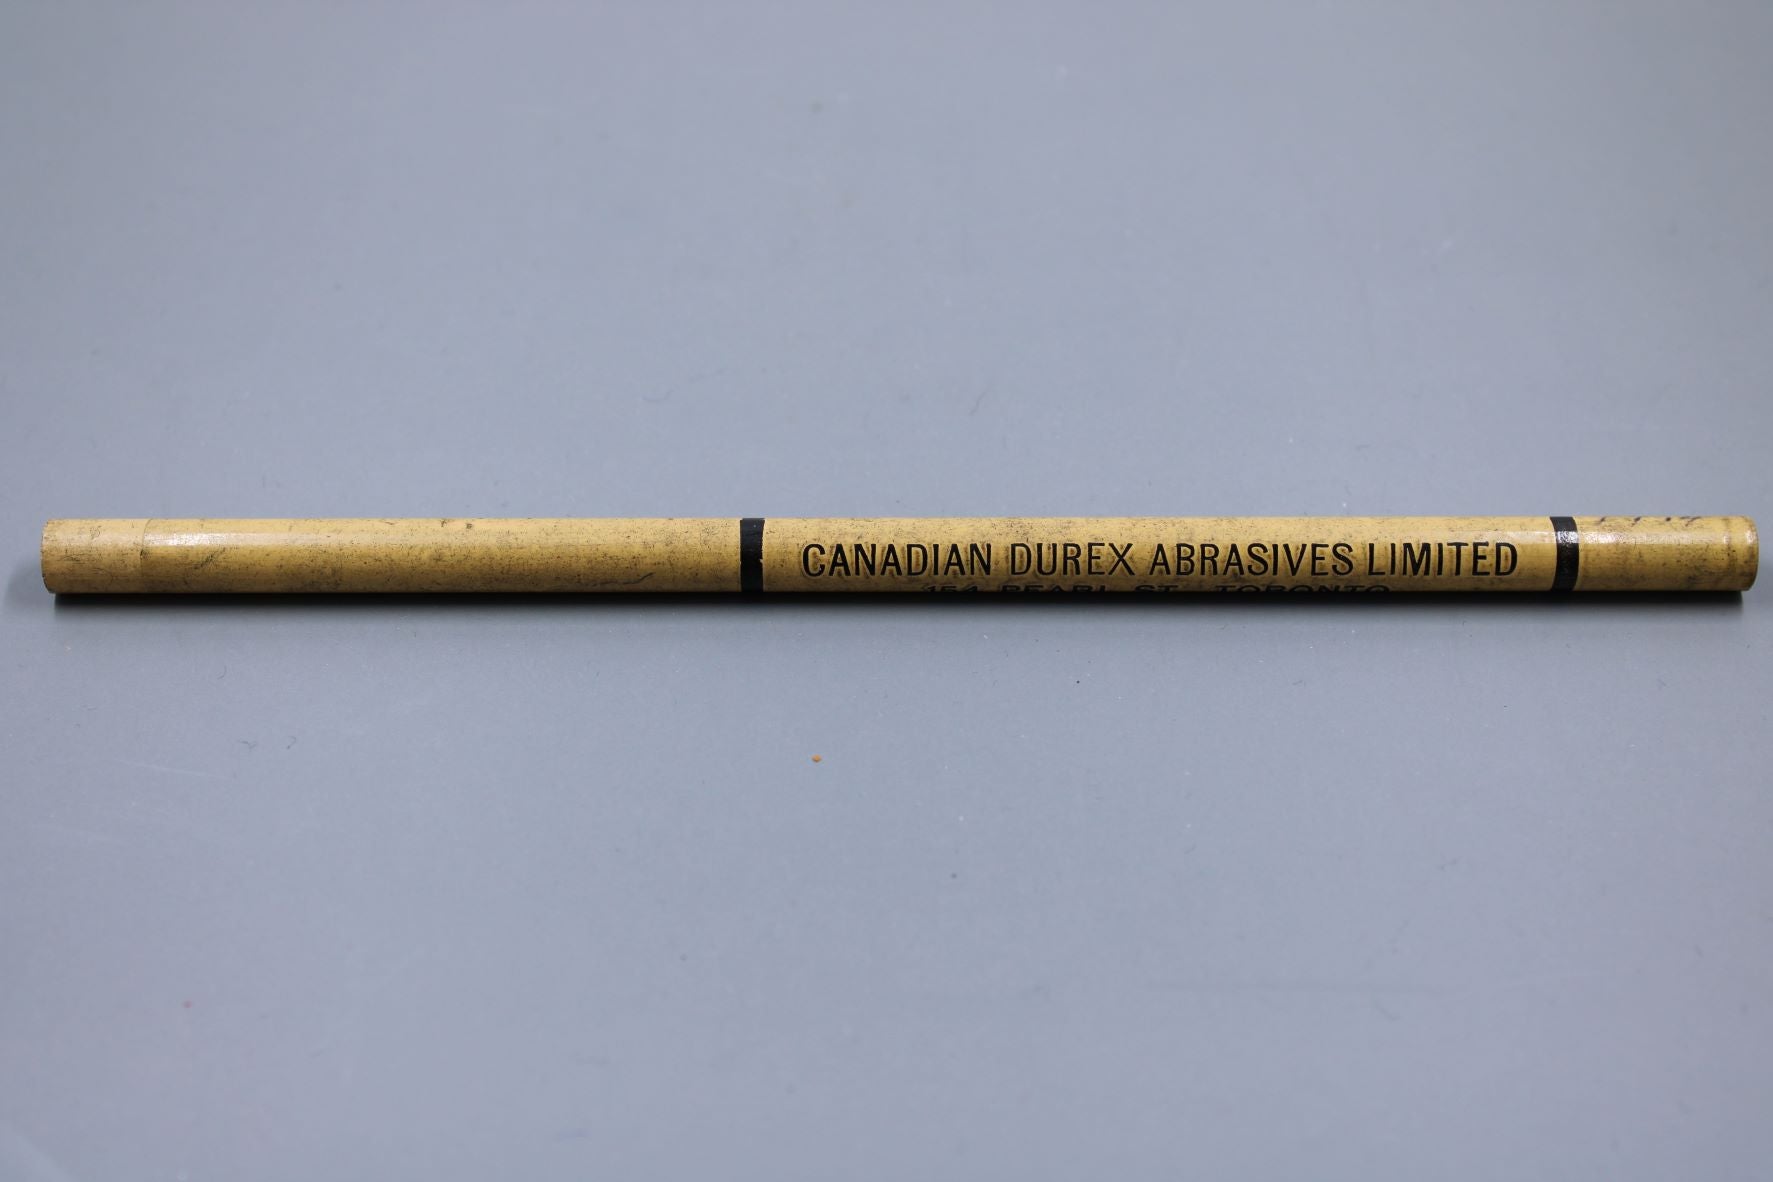 Vintage Advertising Pencil - Canadian Durex Abrasives - Toronto